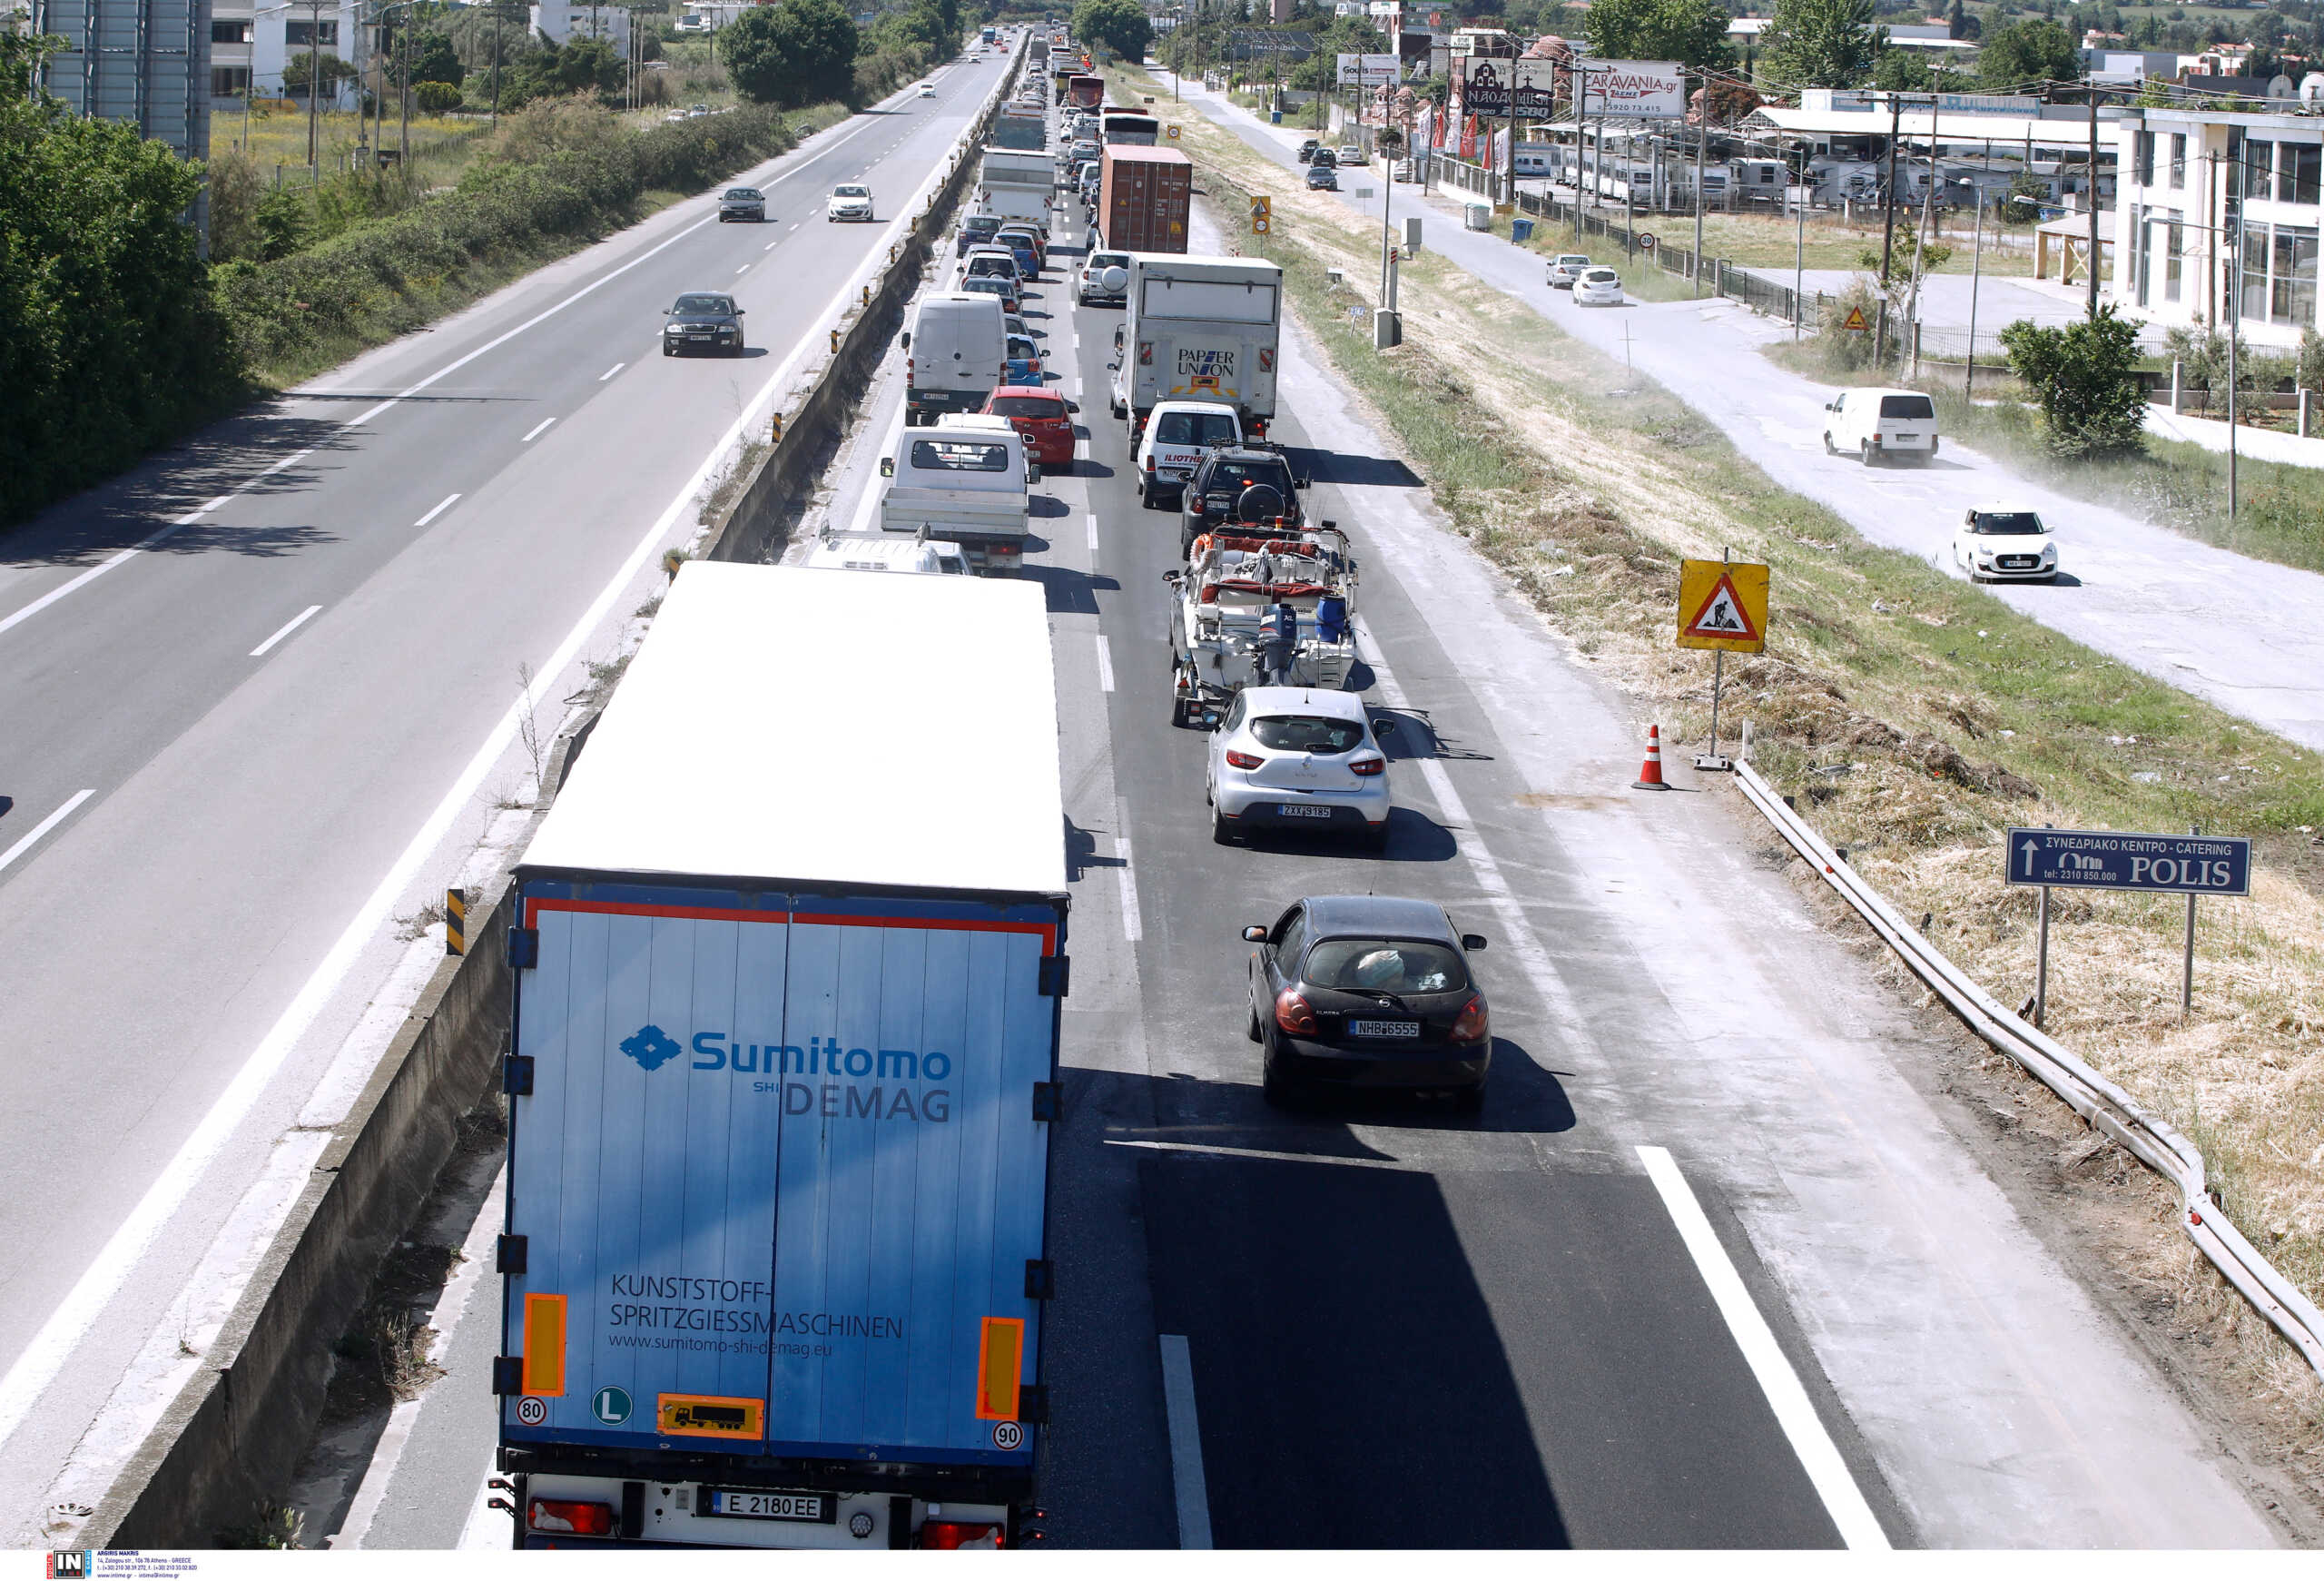 Υπουργείο Μεταφορών: Νέα προθεσμία για τη χορήγηση αδειών και πινακίδων σε μεταχειρισμένα ρυμουλκούμενα οχήματα Ο1